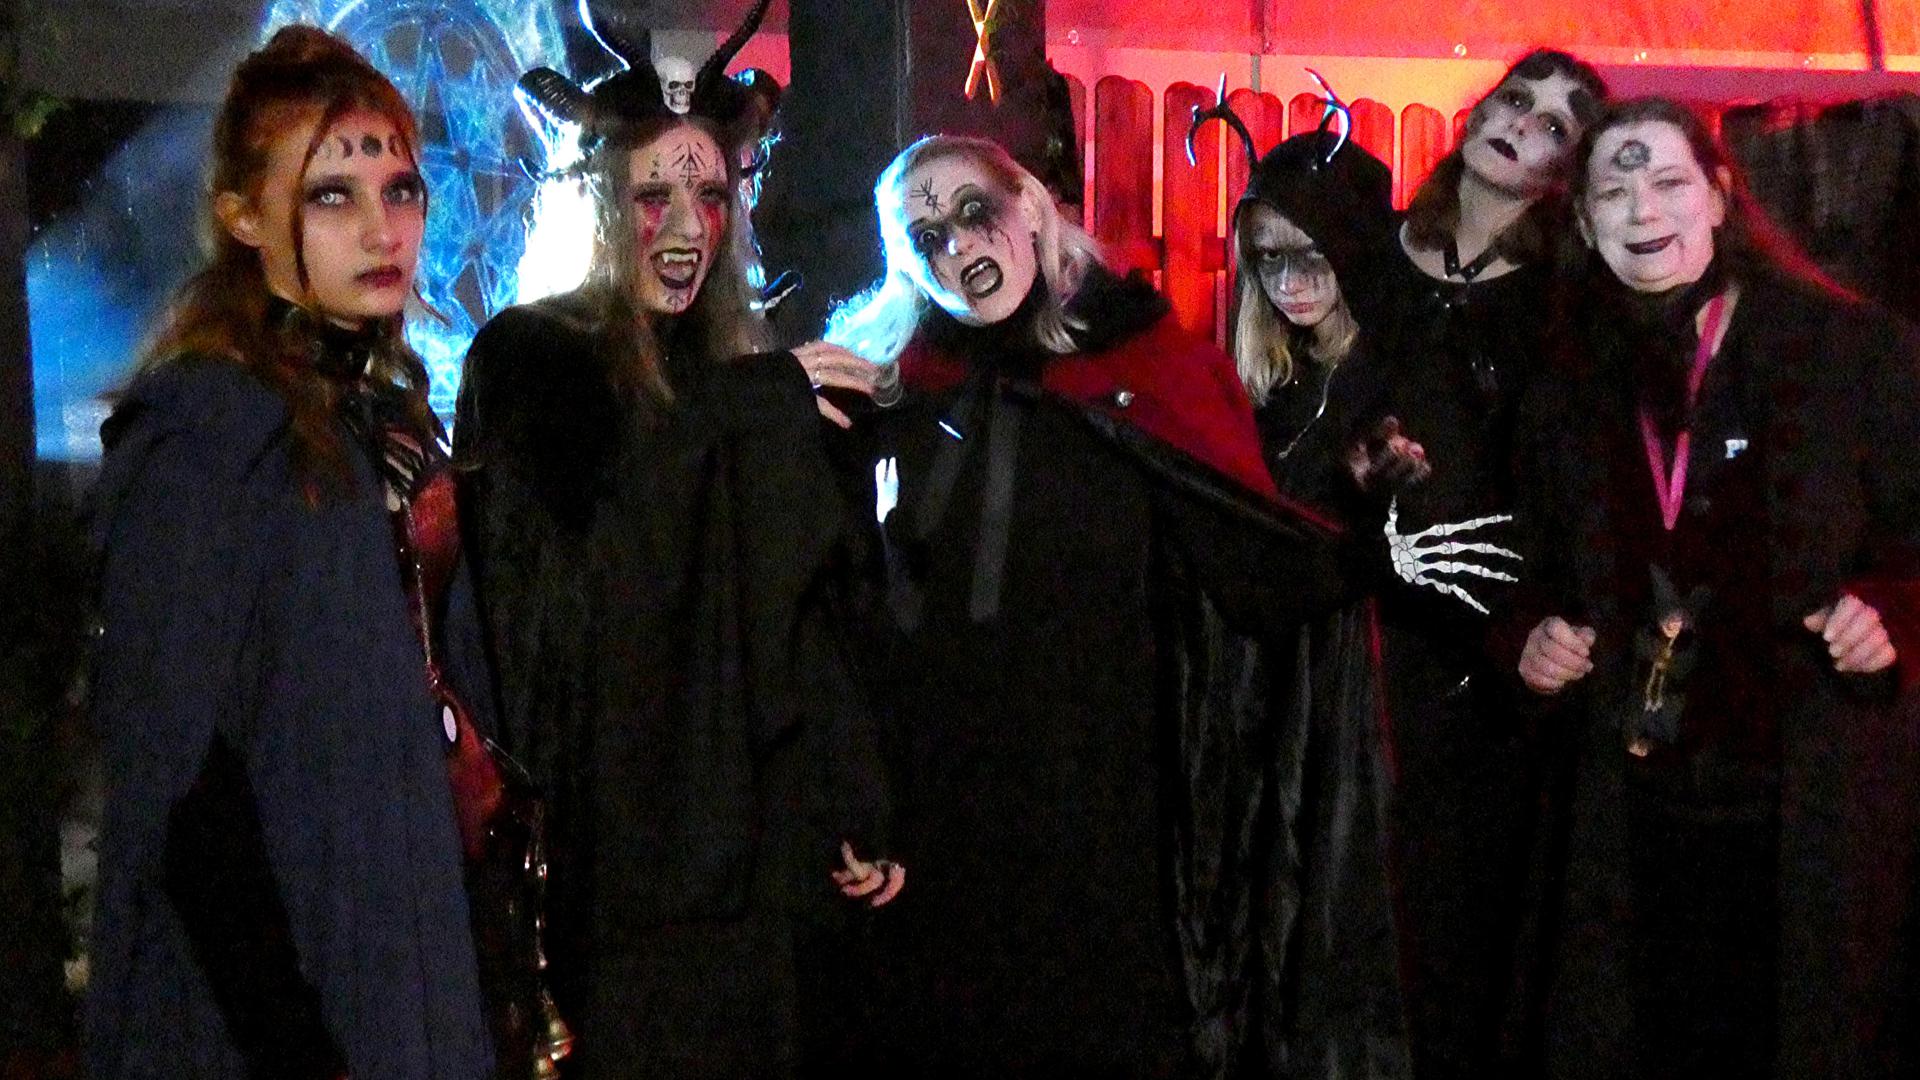 Am Ende eines langen Make-up-Tags praktizieren bei den Halloween Horror Nights Durmersheim kunstvoll hergerichtete Hexen ihre okkulten Rituale.